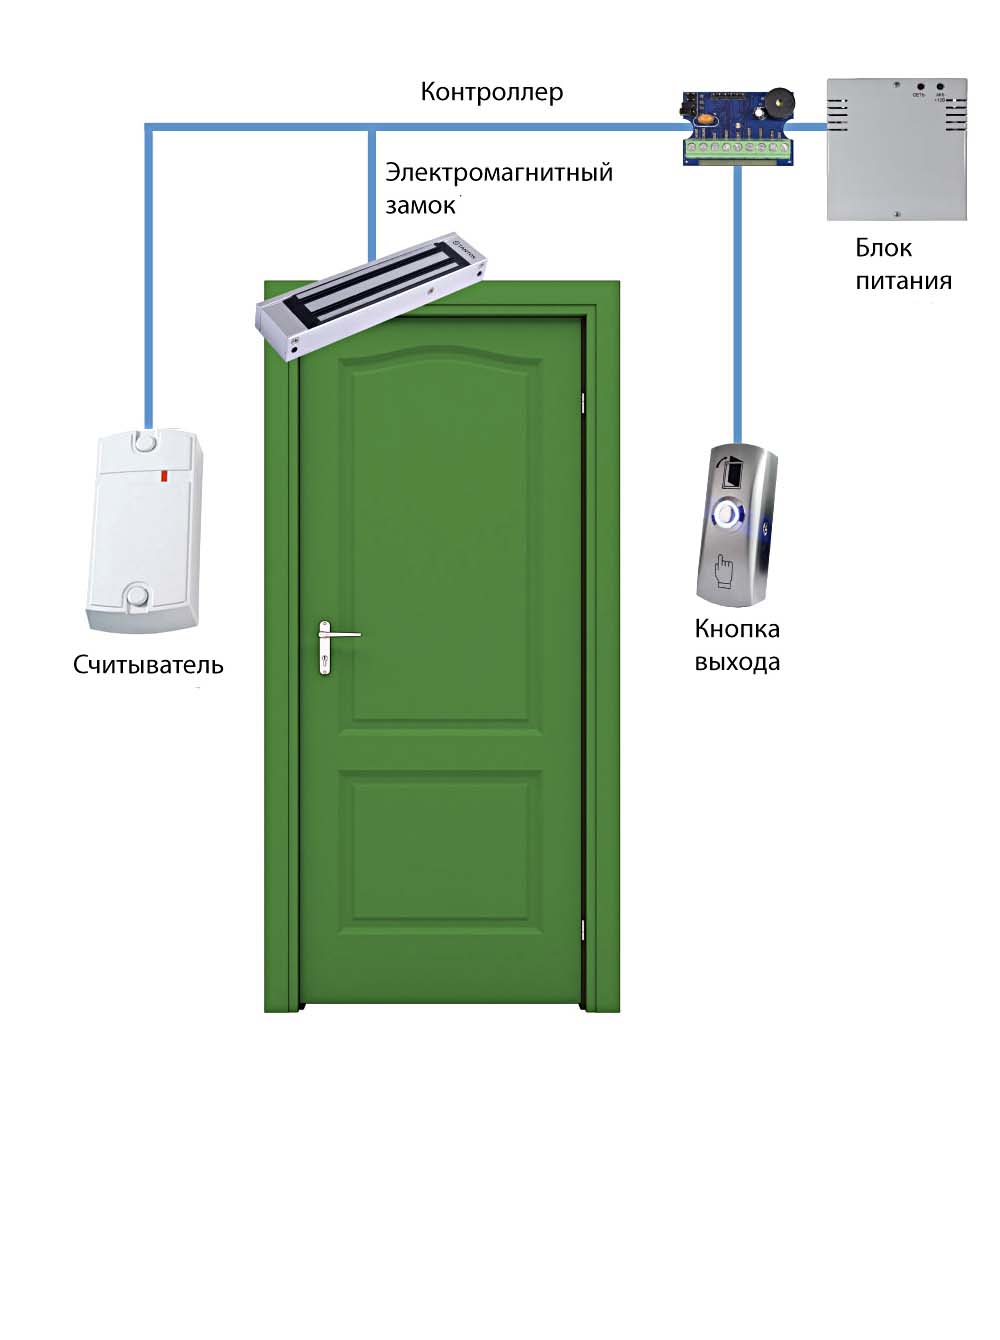 Контроль входа выхода. Комплект СКУД С электромагнитным замком и картами доступа на 1 дверь. СКУД (электромагнитный замок) (1). 'Электромагнитный замок door1. Магнитный замок СКУД на дверь.